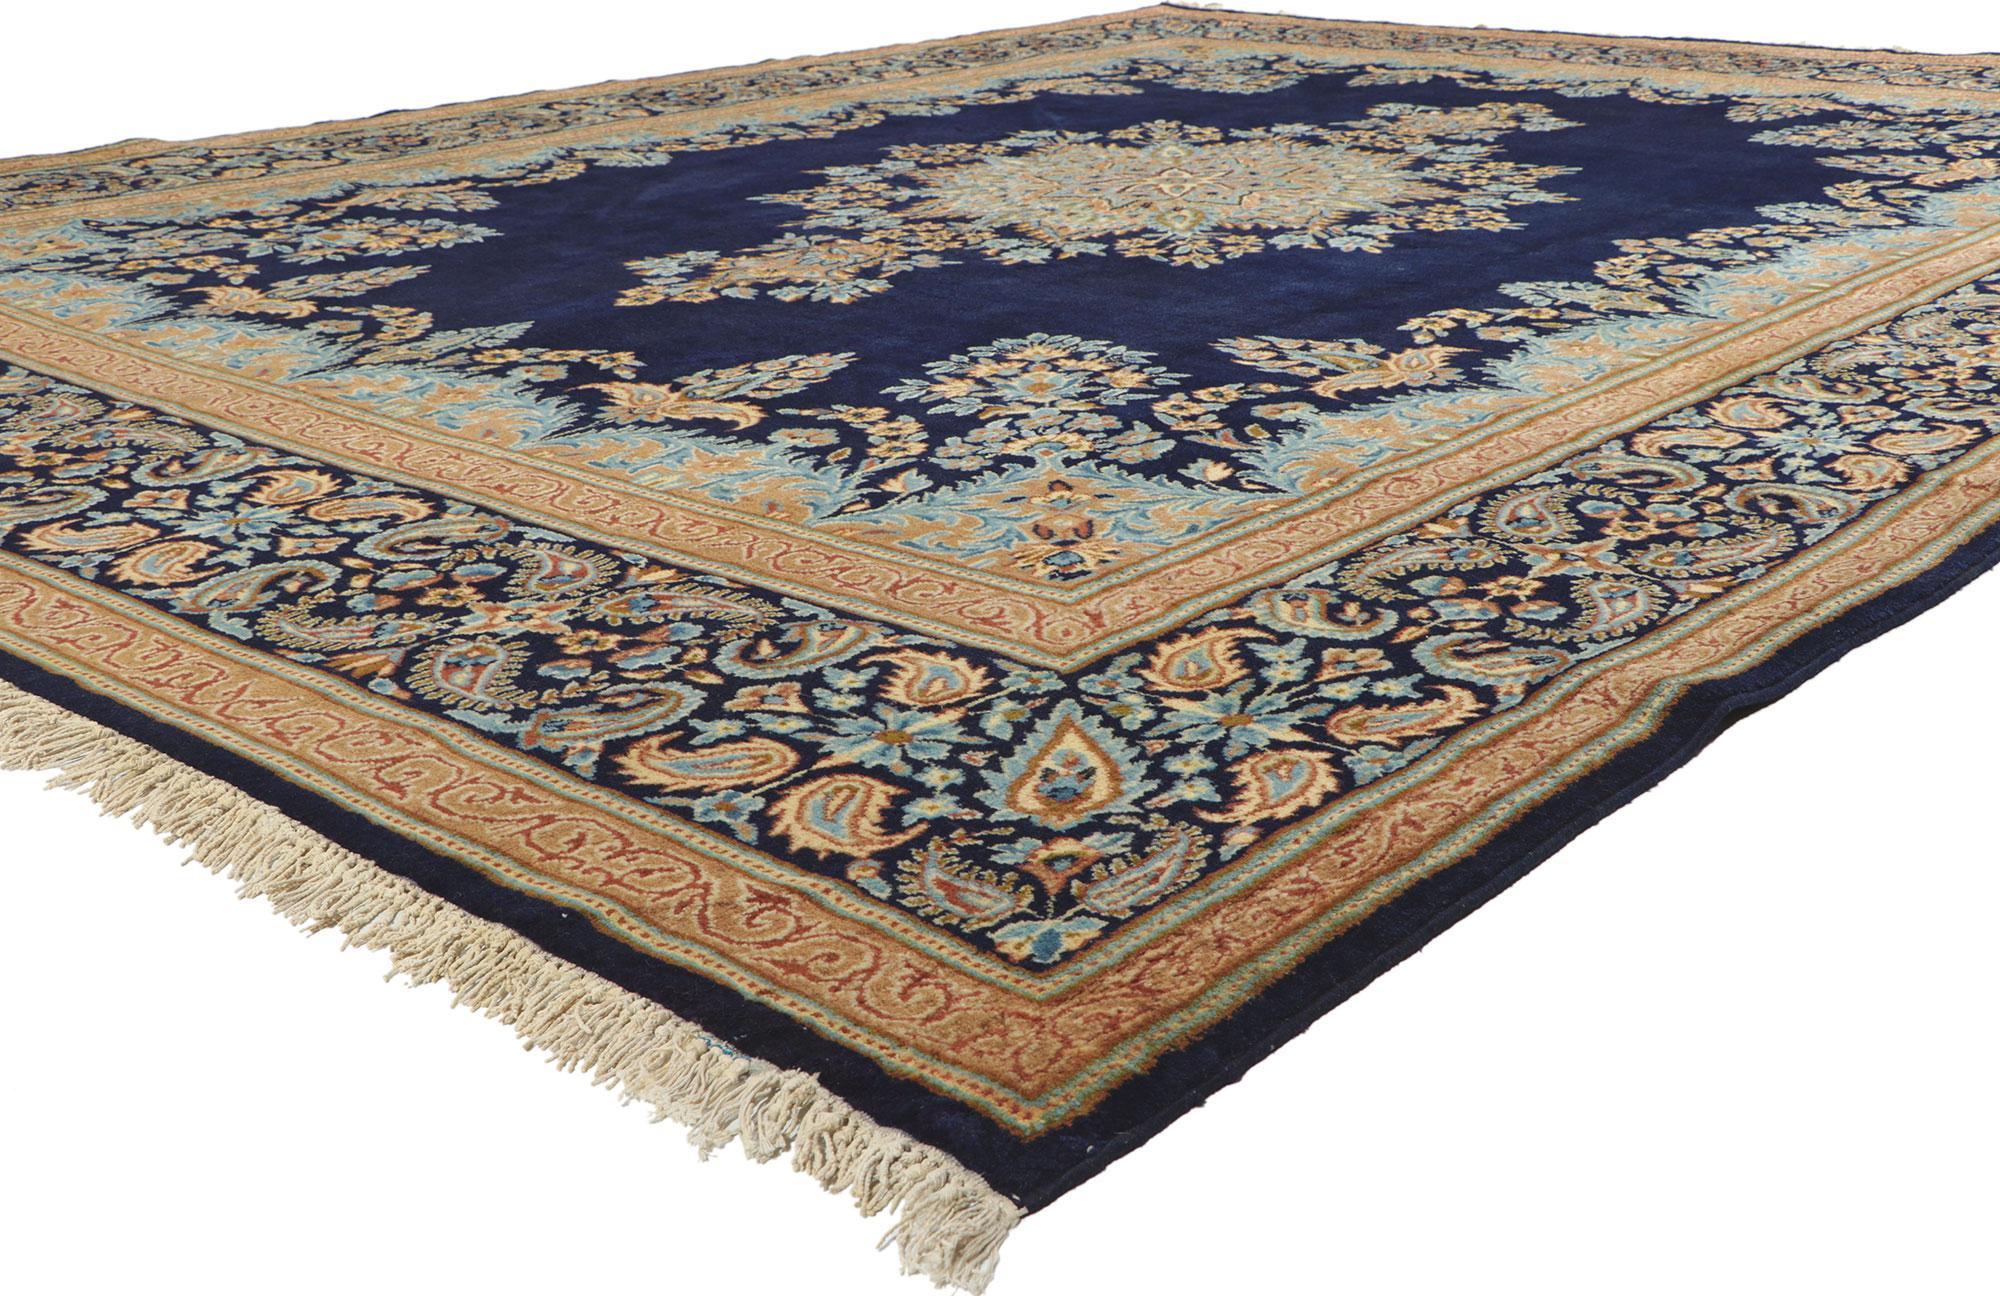 78528 Tapis Vintage By Kerman, 10'03 x 13'05.
Présentant un éventail impressionnant d'éléments floraux avec des détails et une texture incroyables, ce tapis persan vintage Kerman noué à la main est une vision captivante de la beauté tissée. Le